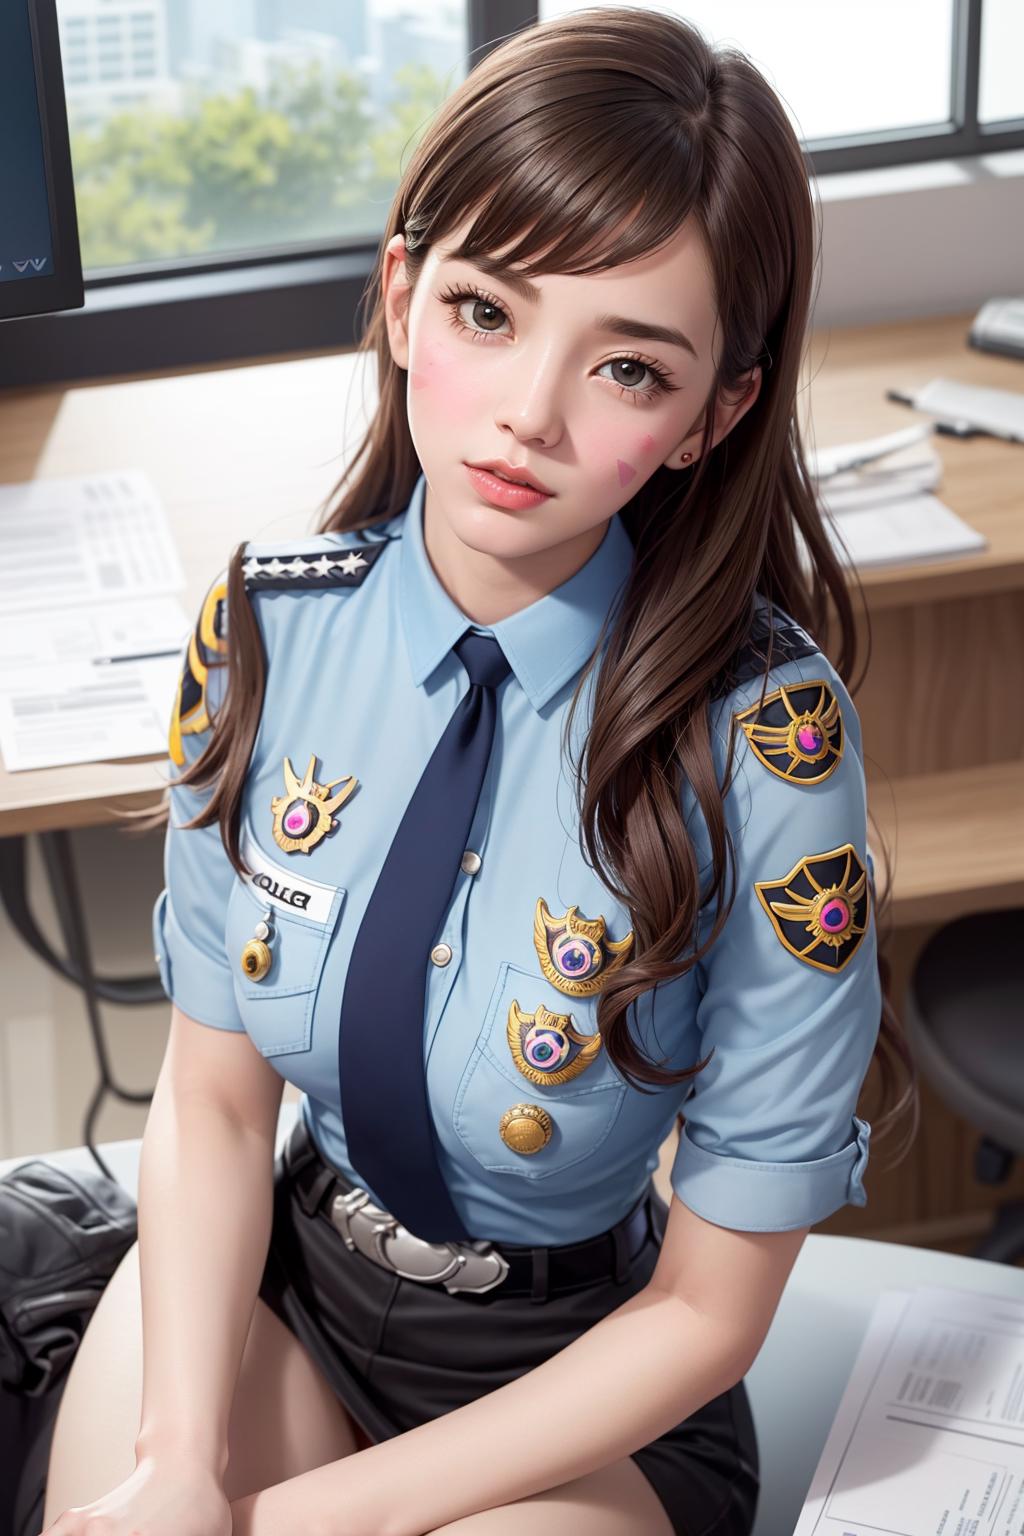 Officer D.Va ( う-´)づ/̵͇̿̿/’̿’̿ ̿ ̿̿ ̿̿  (LoRA) image by joyy114